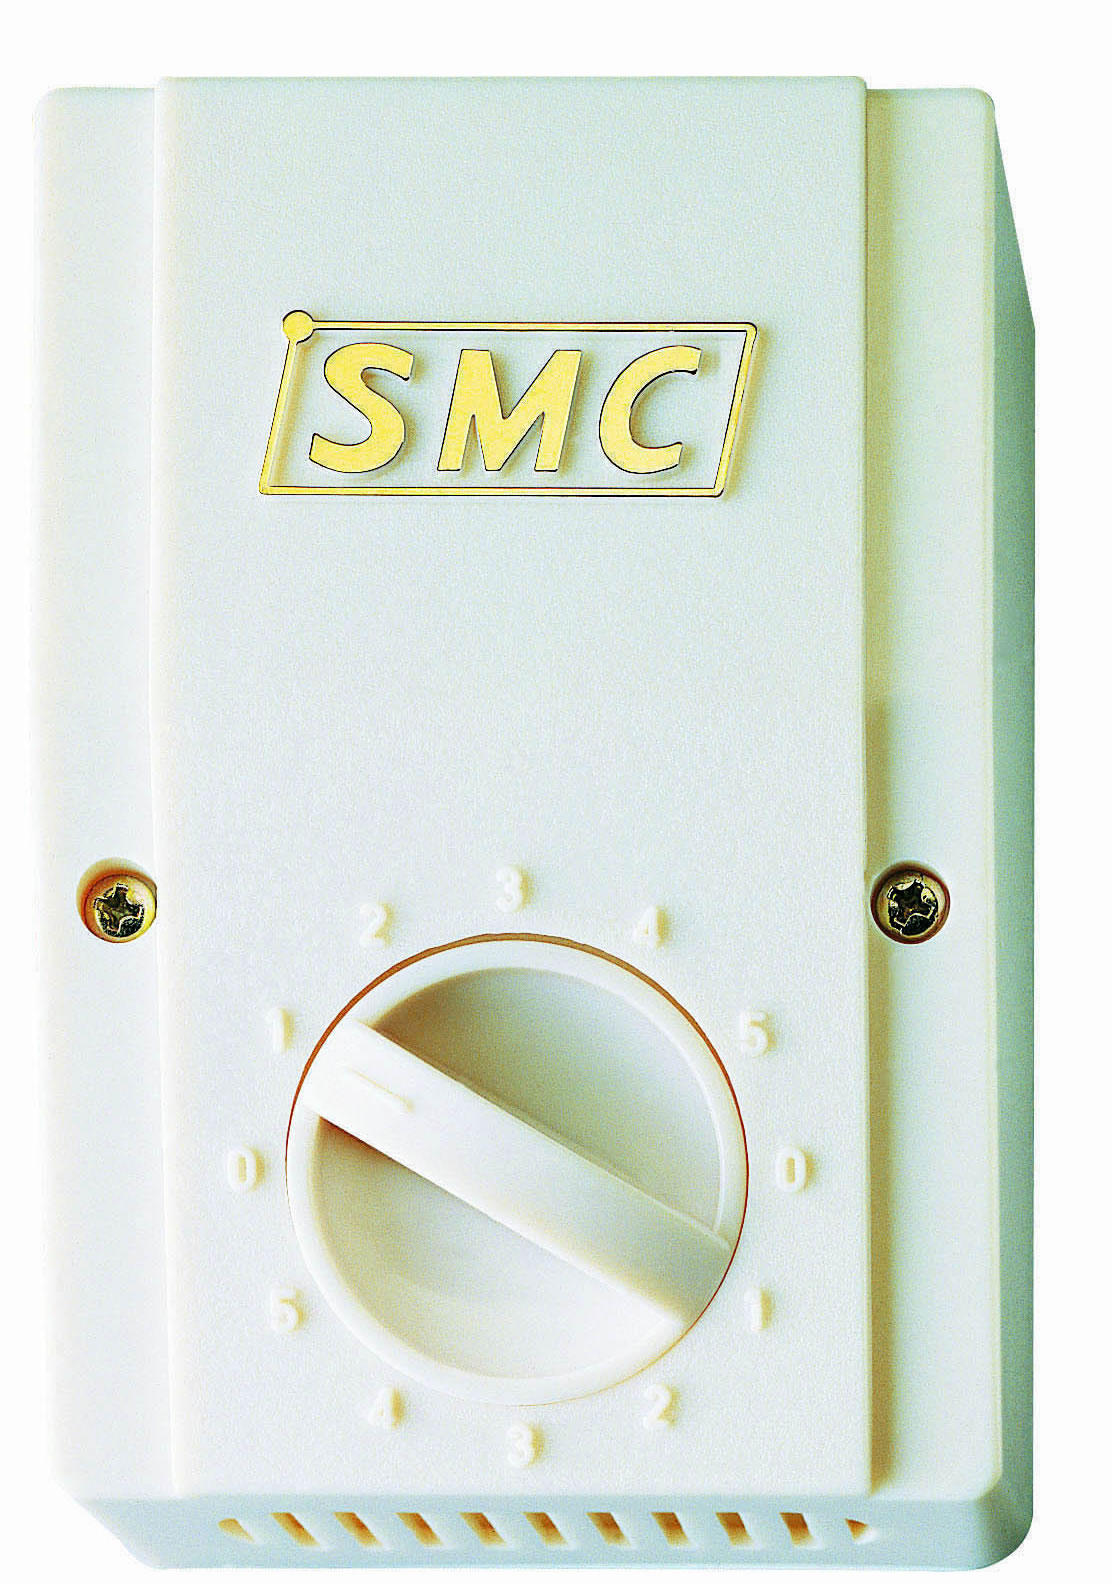 "SMC" 5-speed ceiling fan regulators